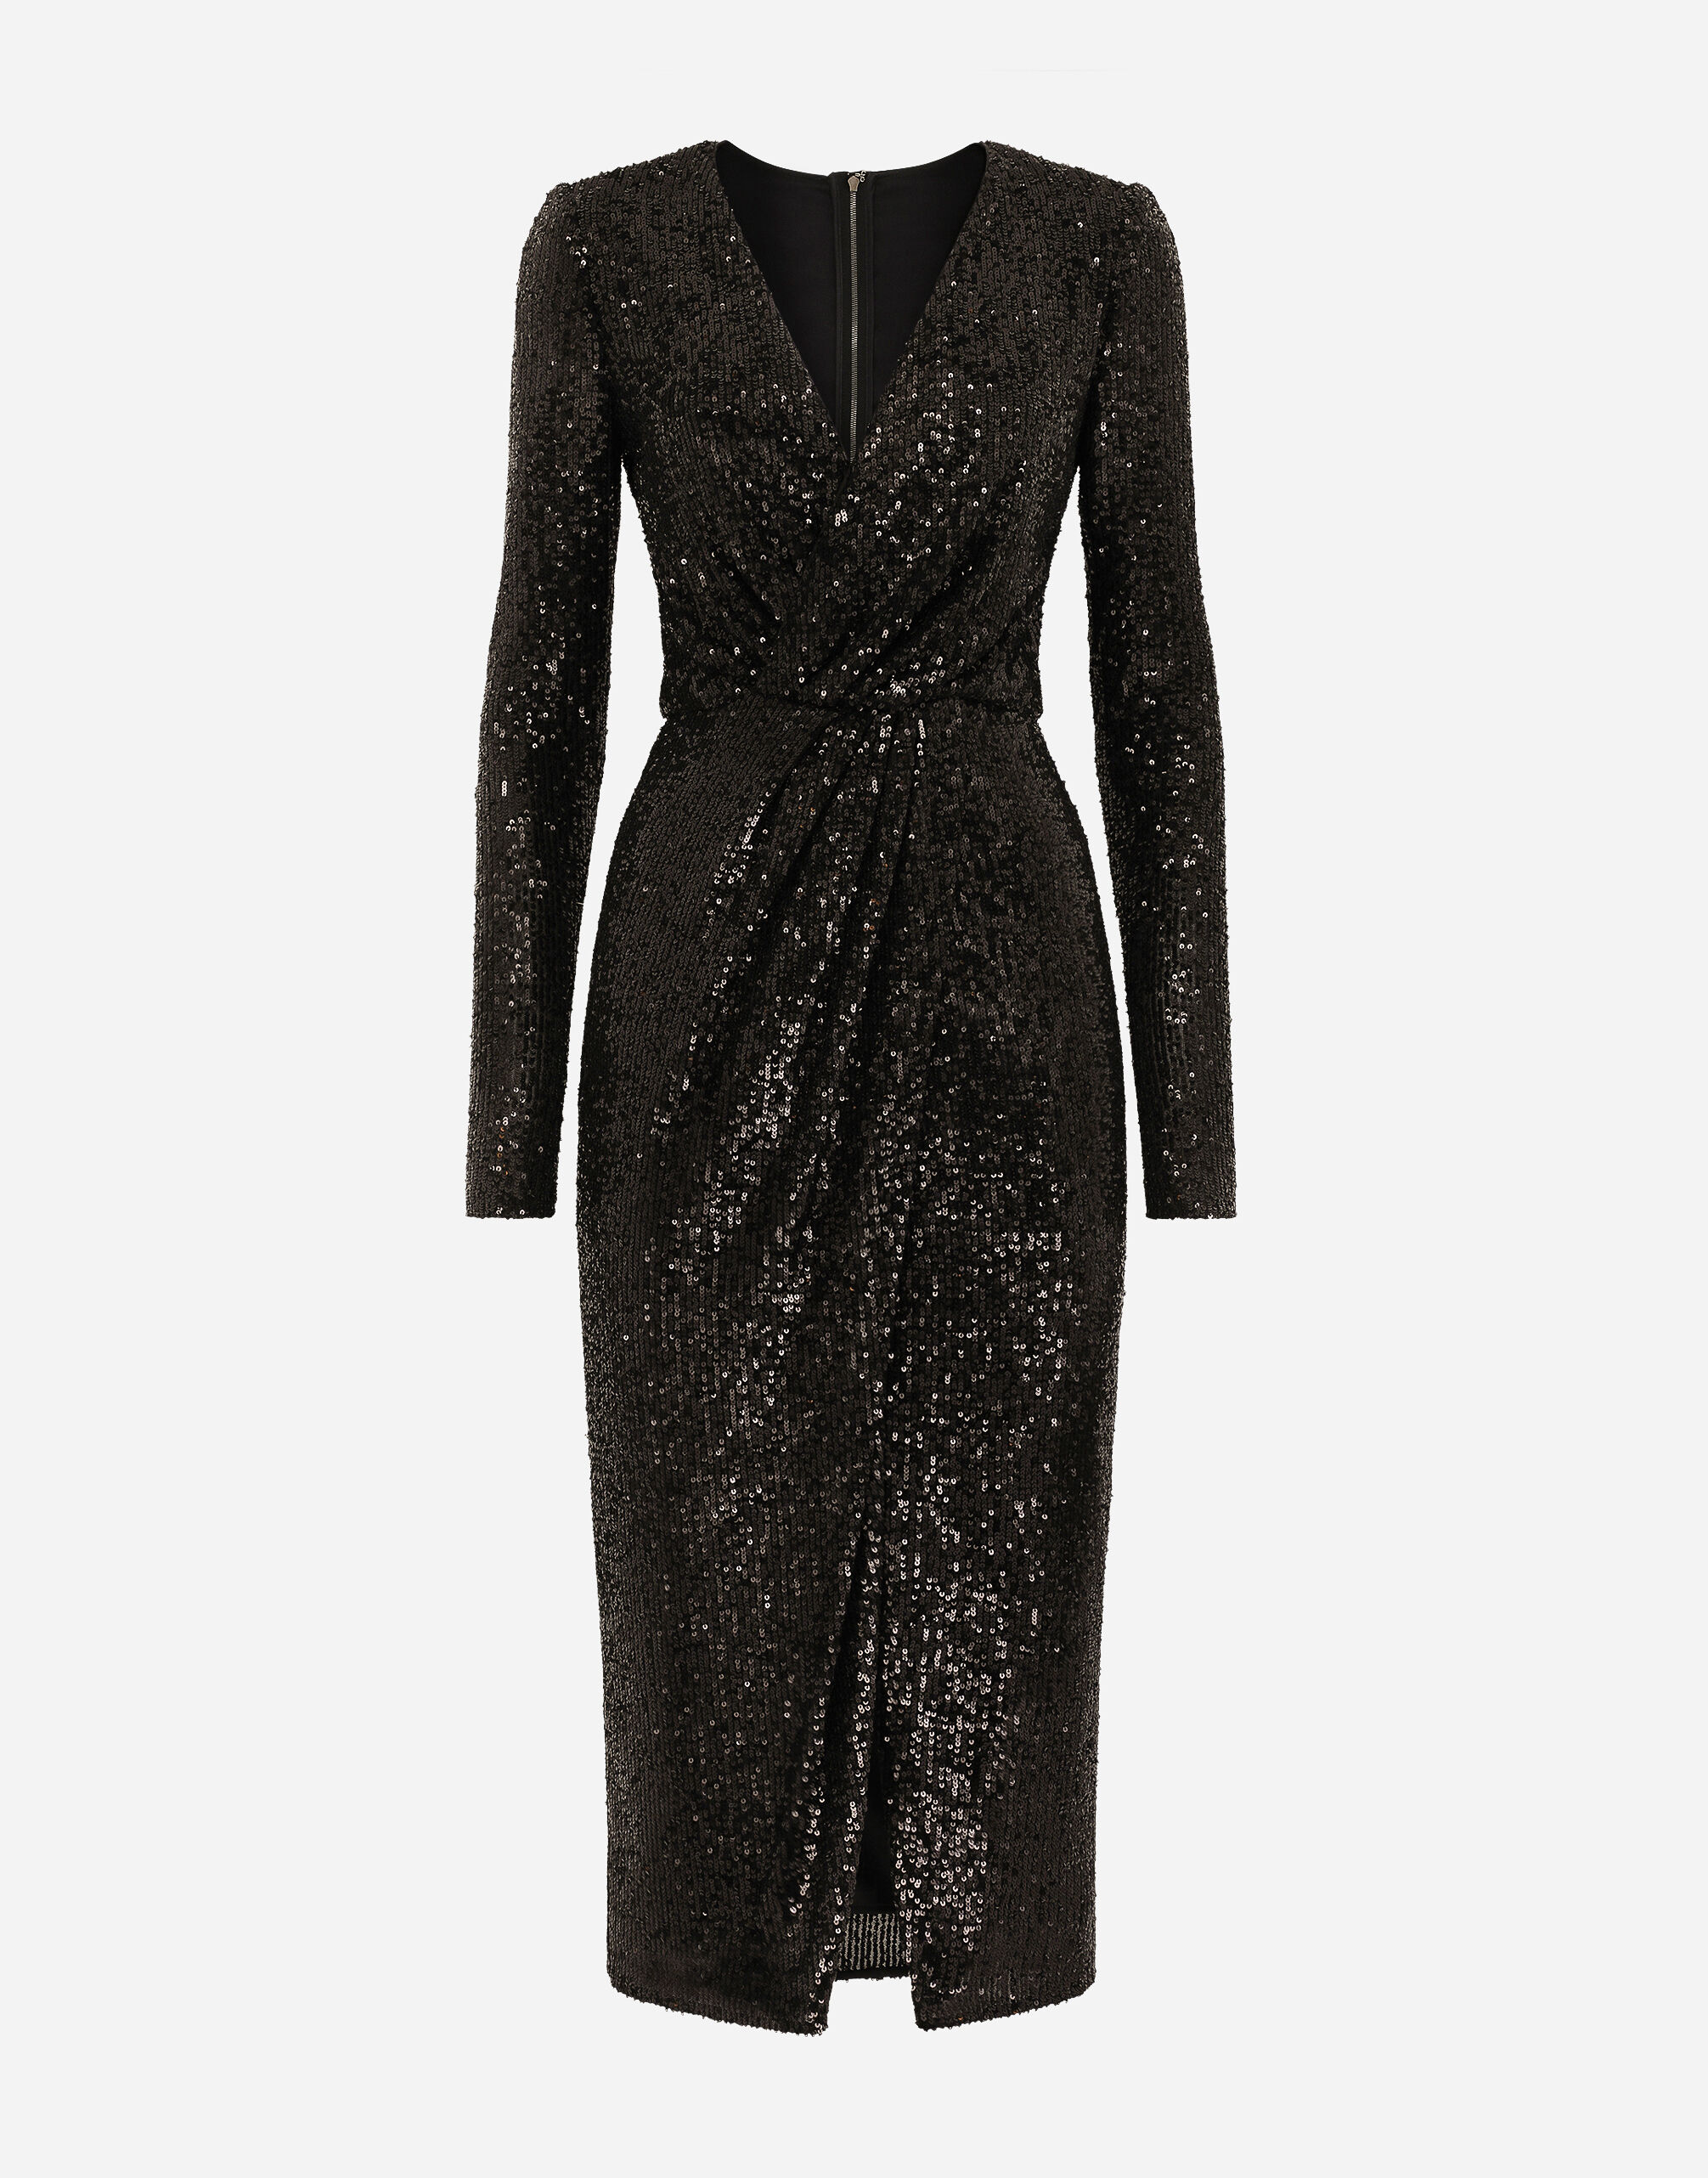 Dolce & Gabbana Micro-sequined calf-length dress Black BB6711AV893